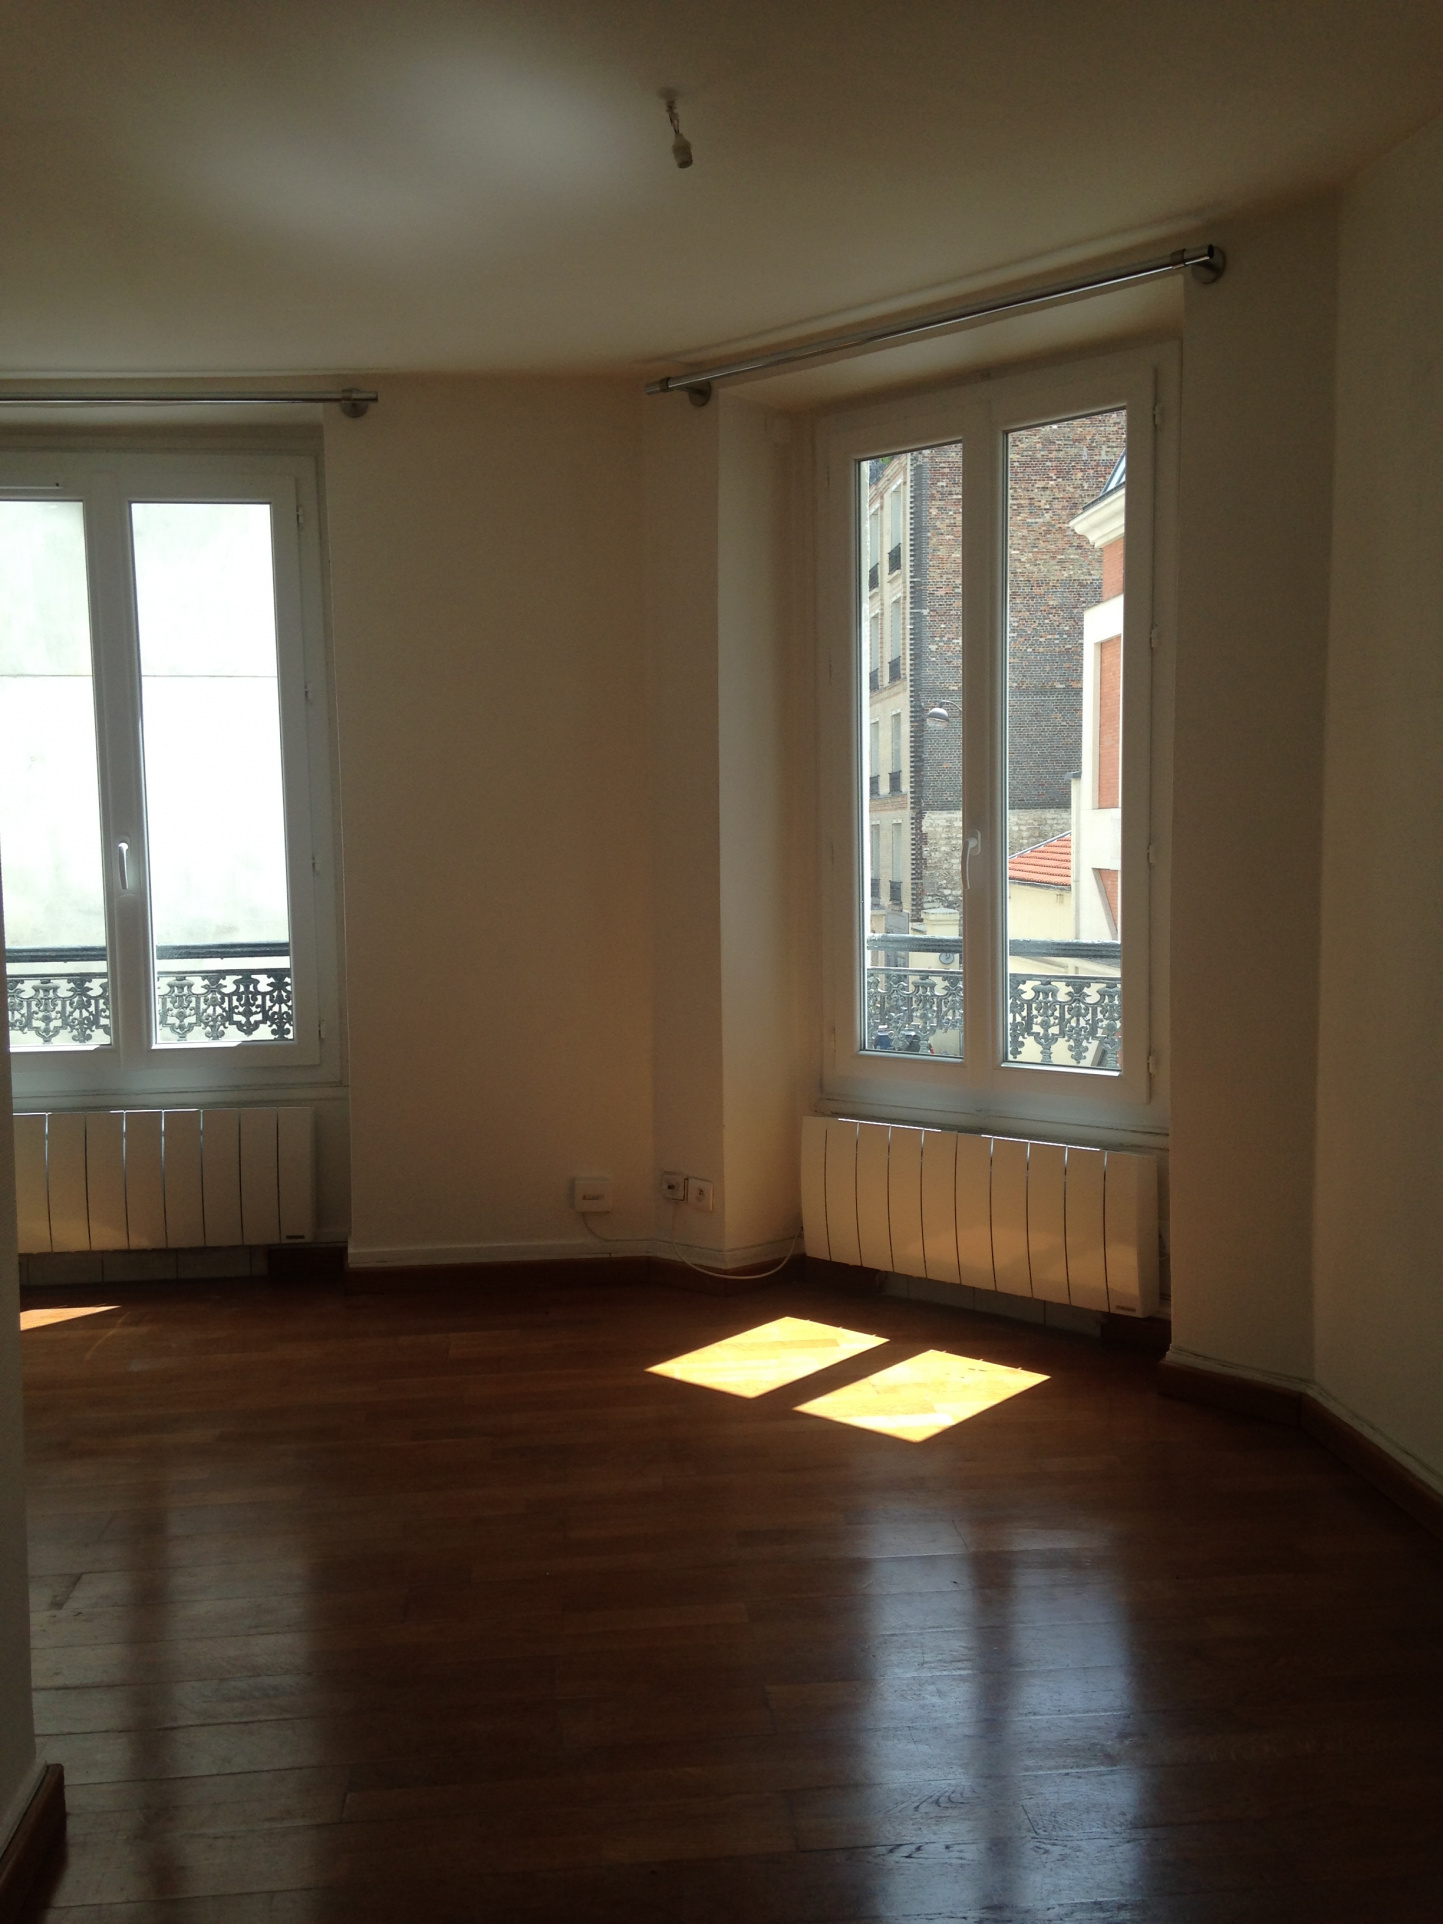 Bel appartement 1 pièce – Paris 17 ème – MoVILLIERS